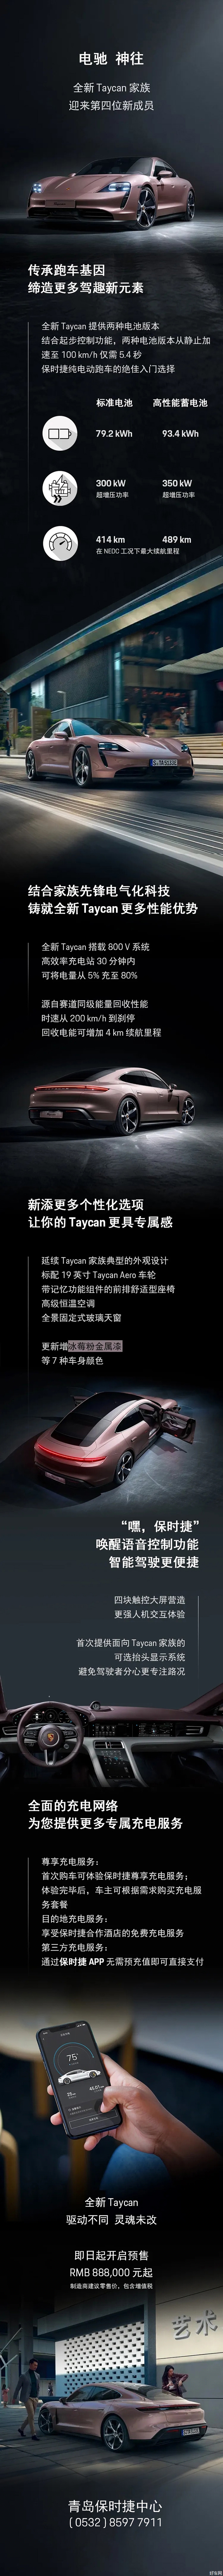 全新后驱版Taycan 即将上市 冰梅粉引领潮流